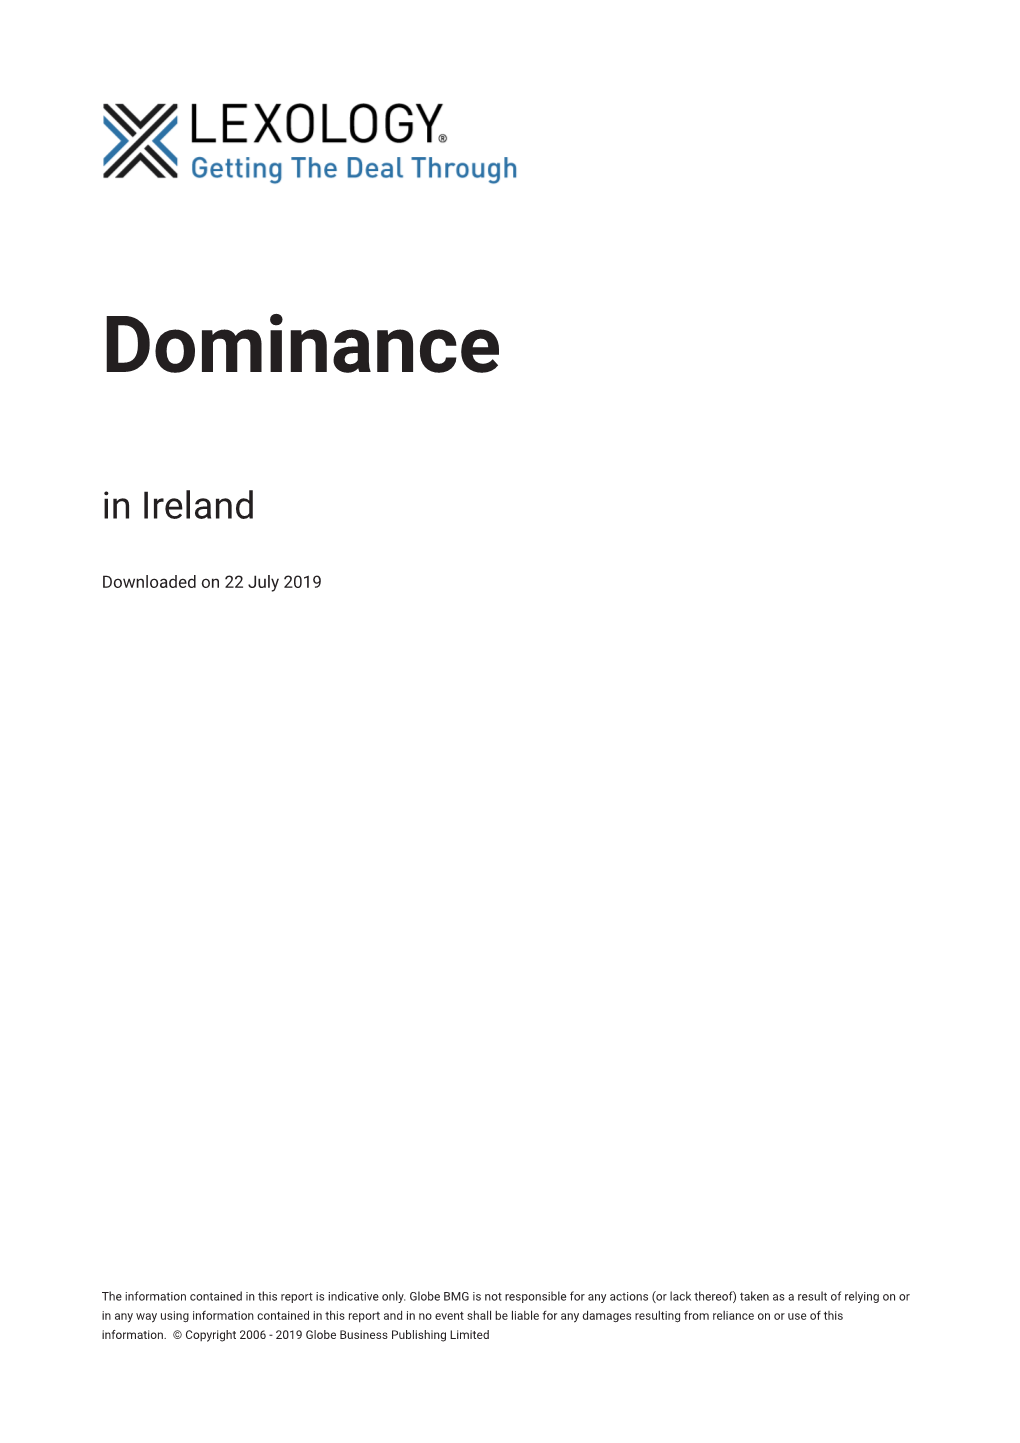 Dominance in Ireland